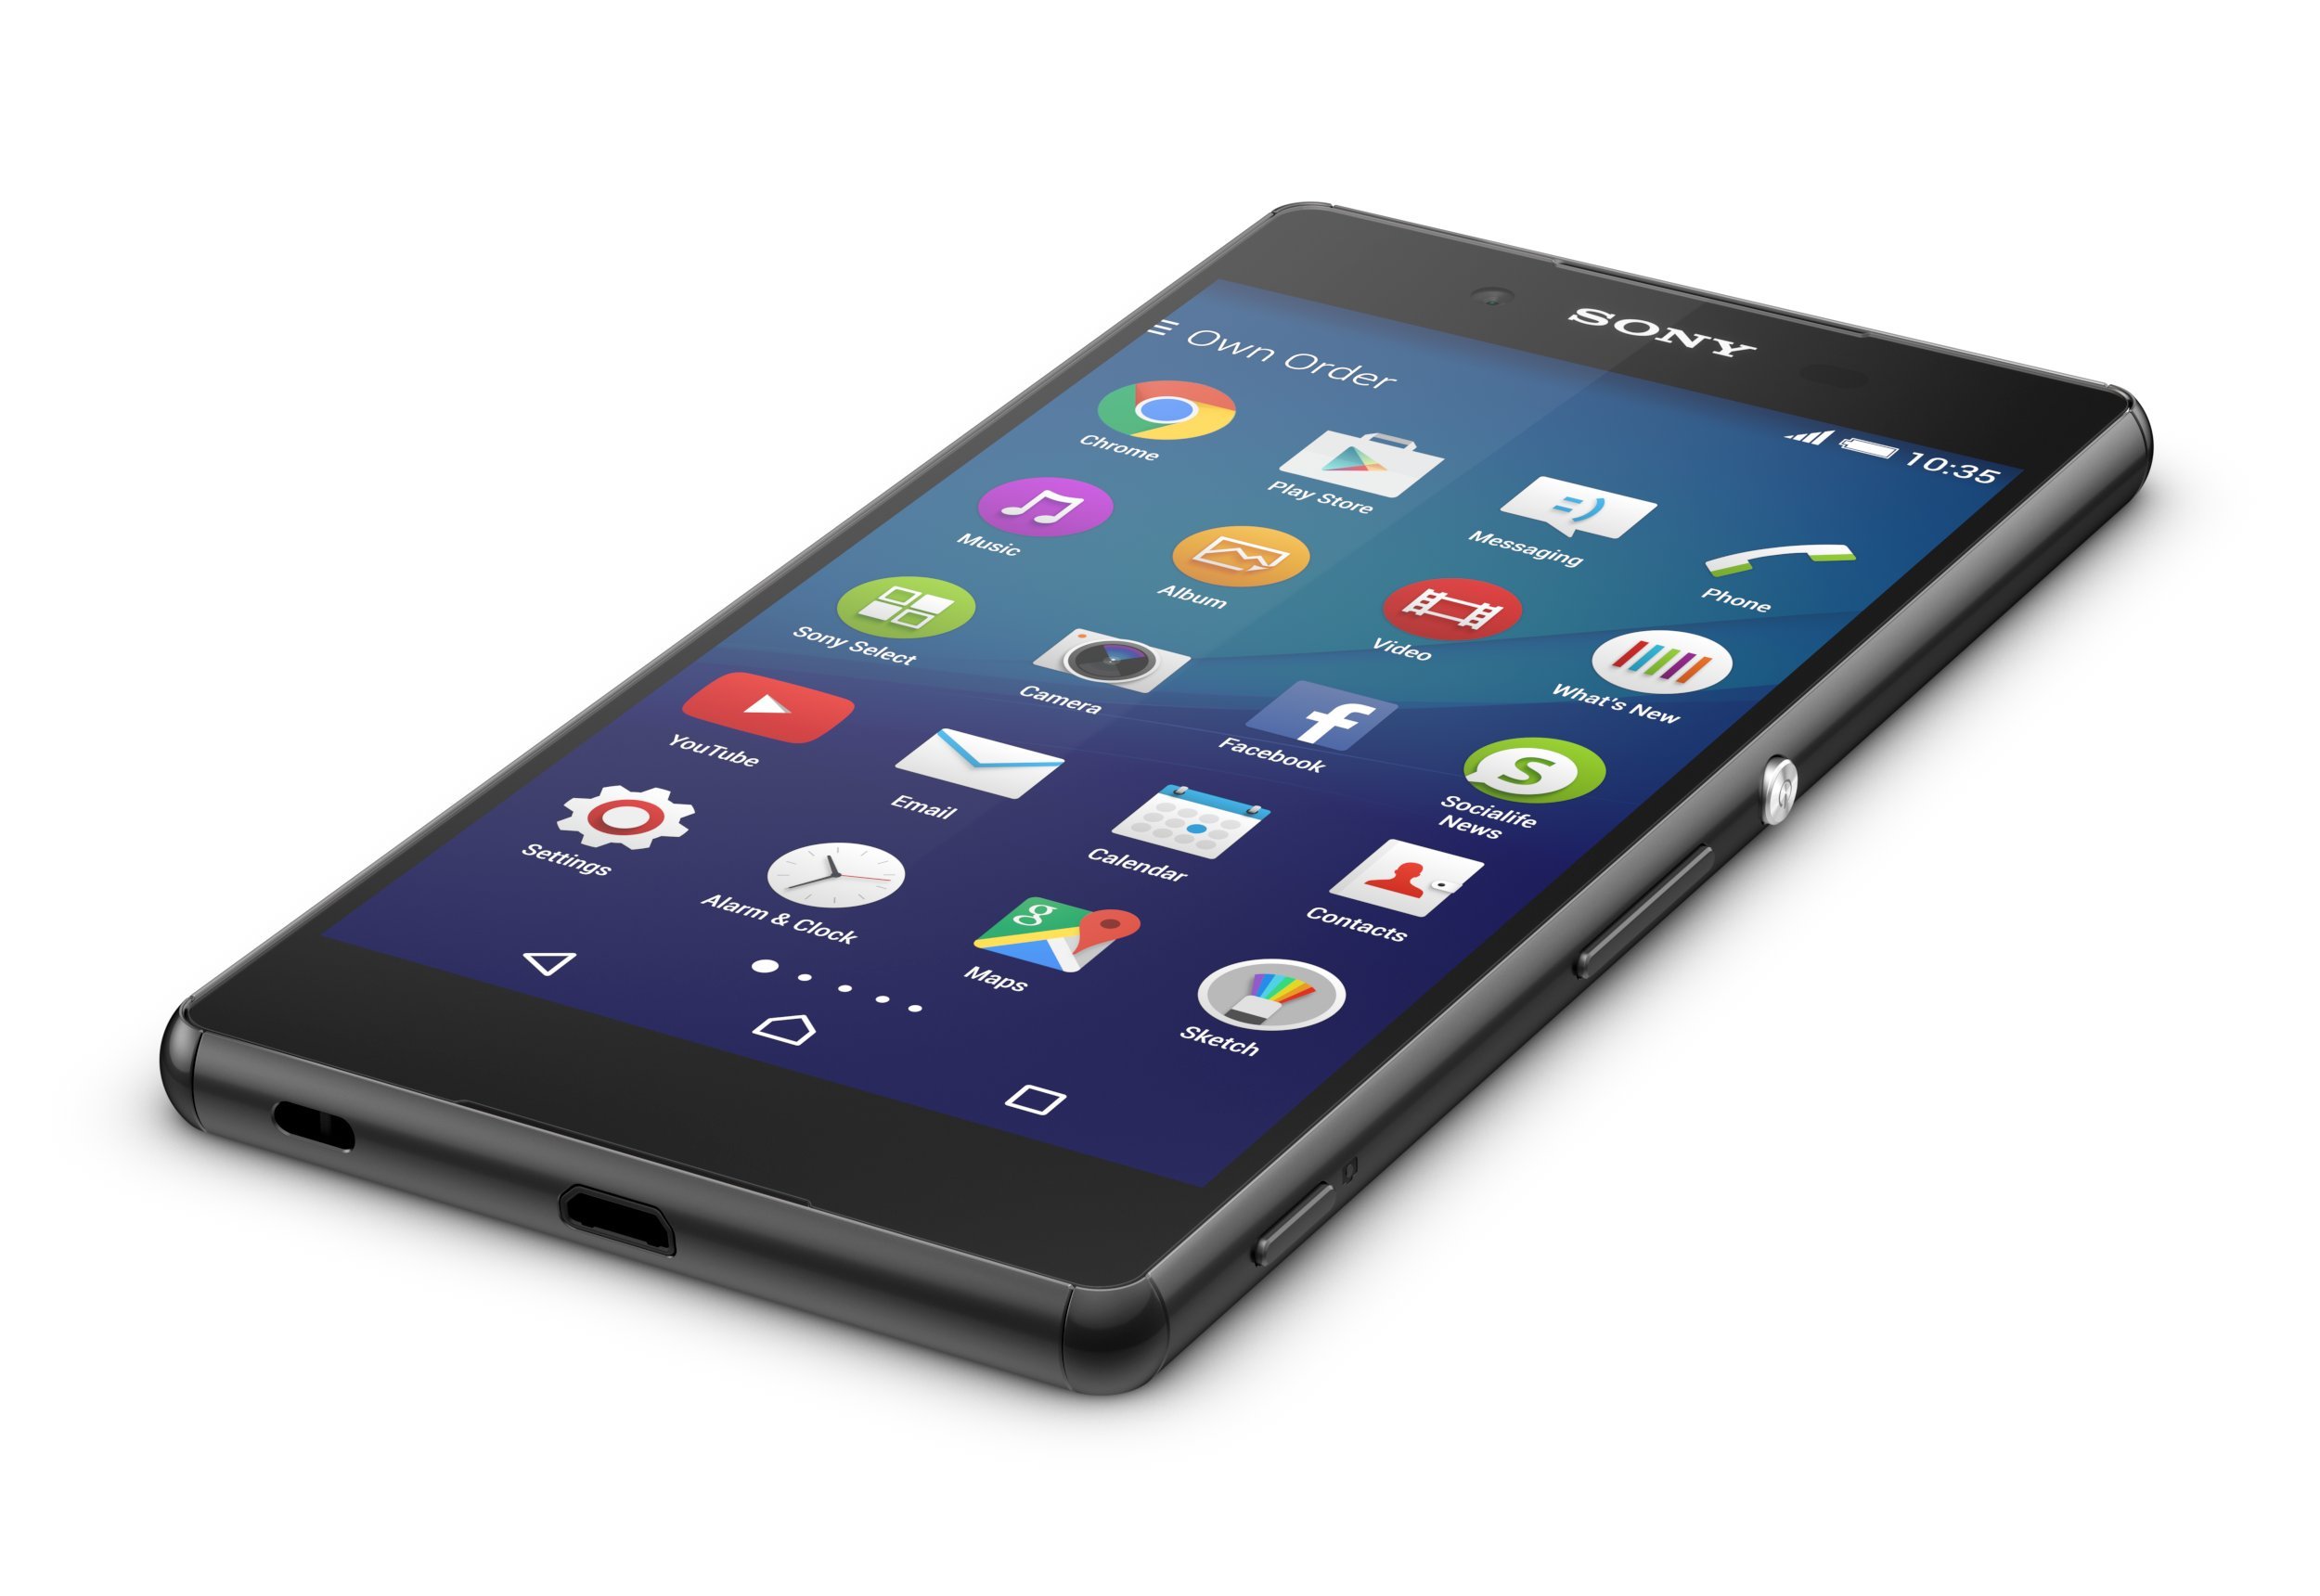 Sony Xperia Z3+ 32GB GSM/LTE Unlocked Cell Phone - Black (U.S. Warranty)